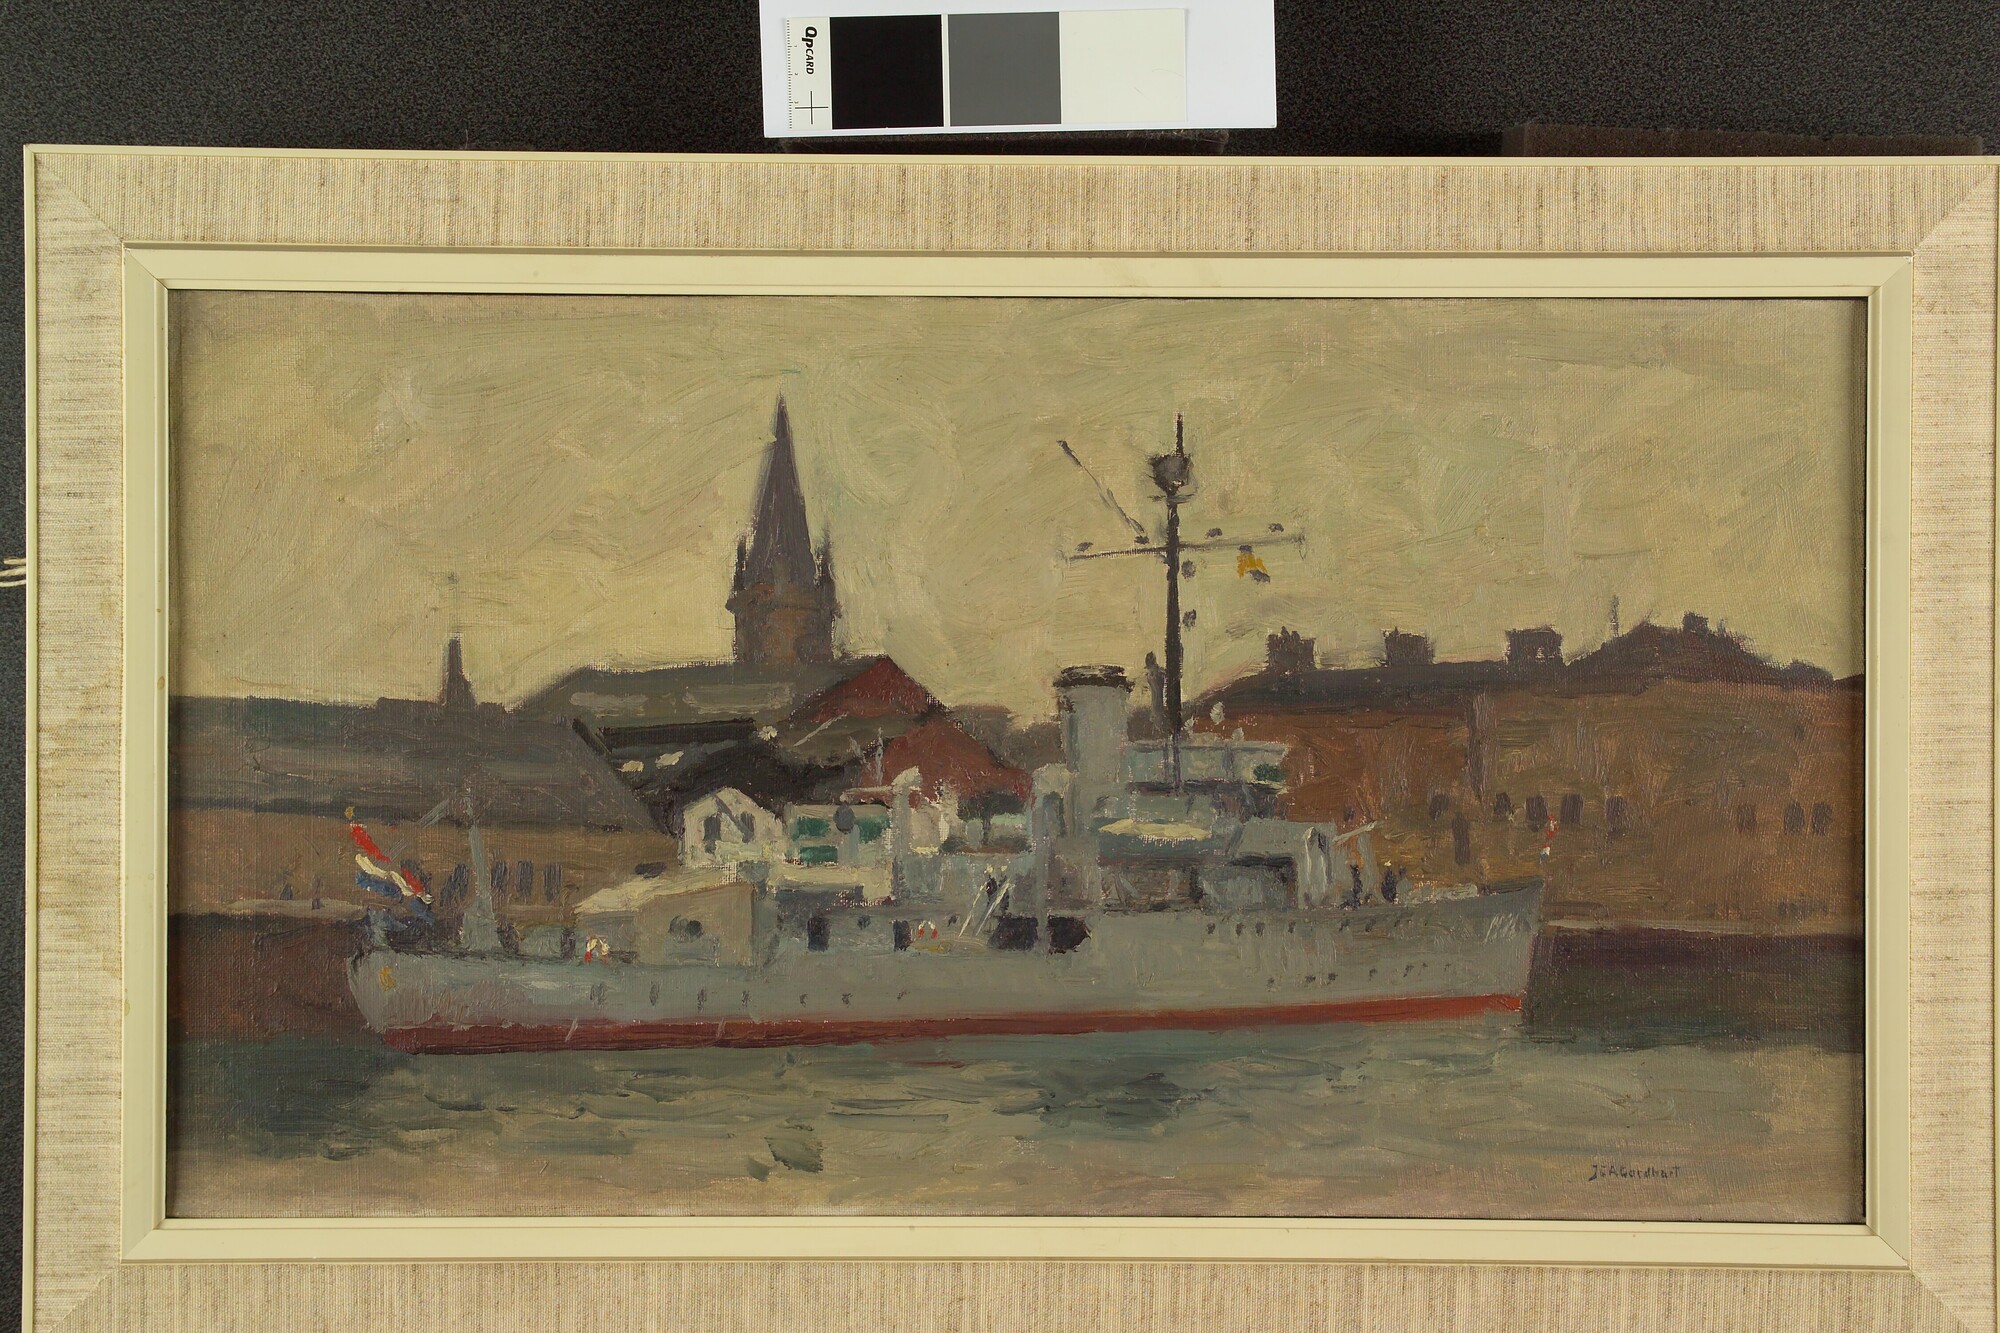 A.4955(01); Het politievaartuig Hr.Ms. Batjan in de haven van Dundee; schilderij